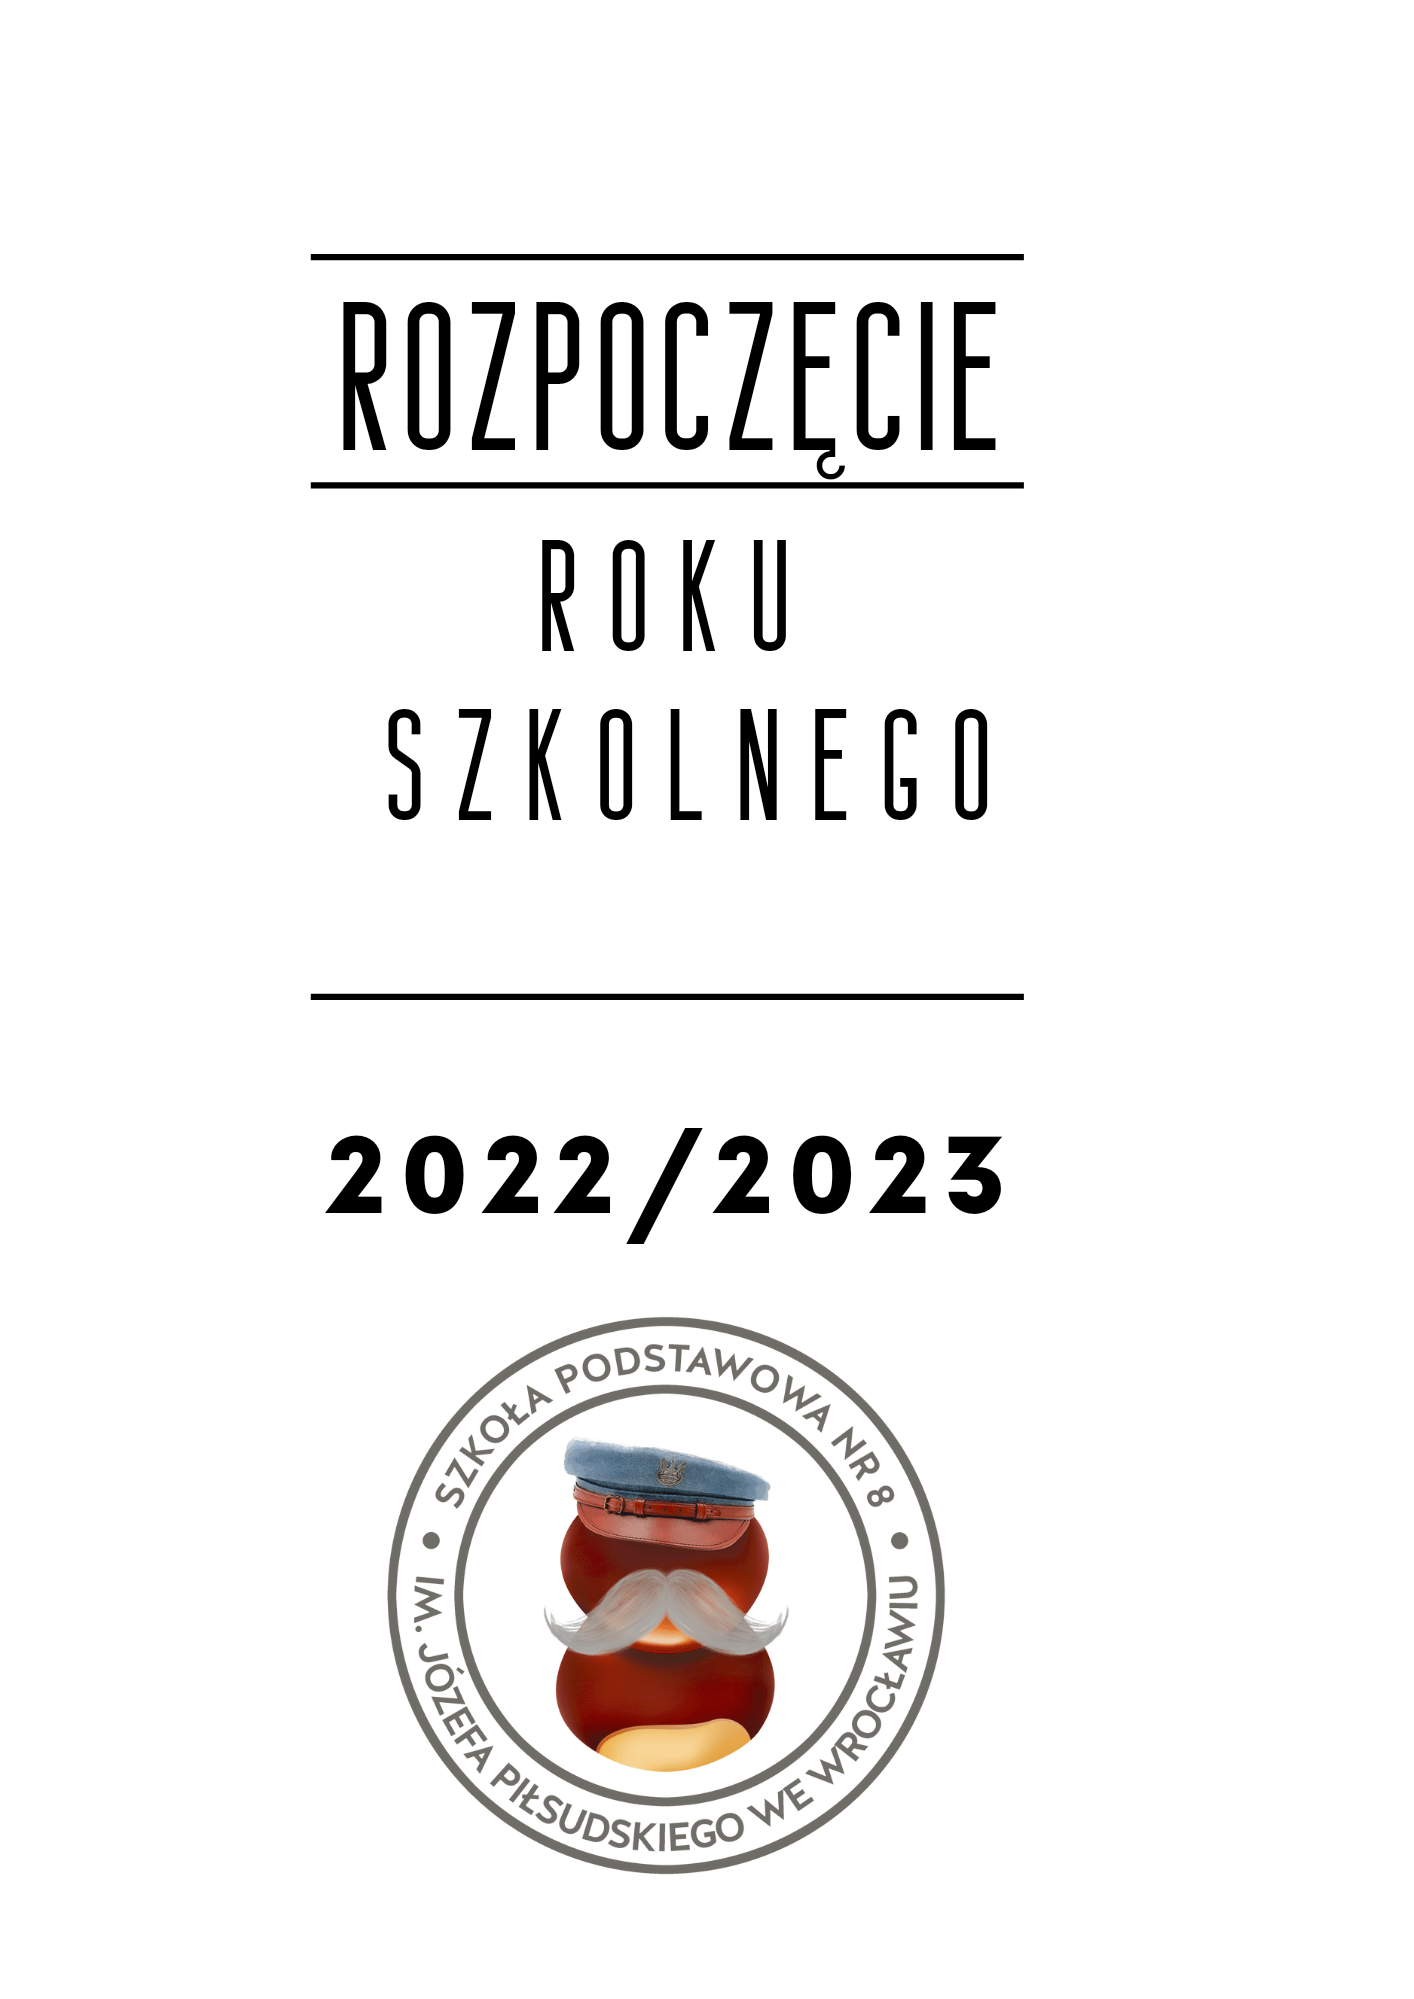 ROZPOCZĘCIE ROKU SZKOLNEGO 2022/2023 - Obrazek 1